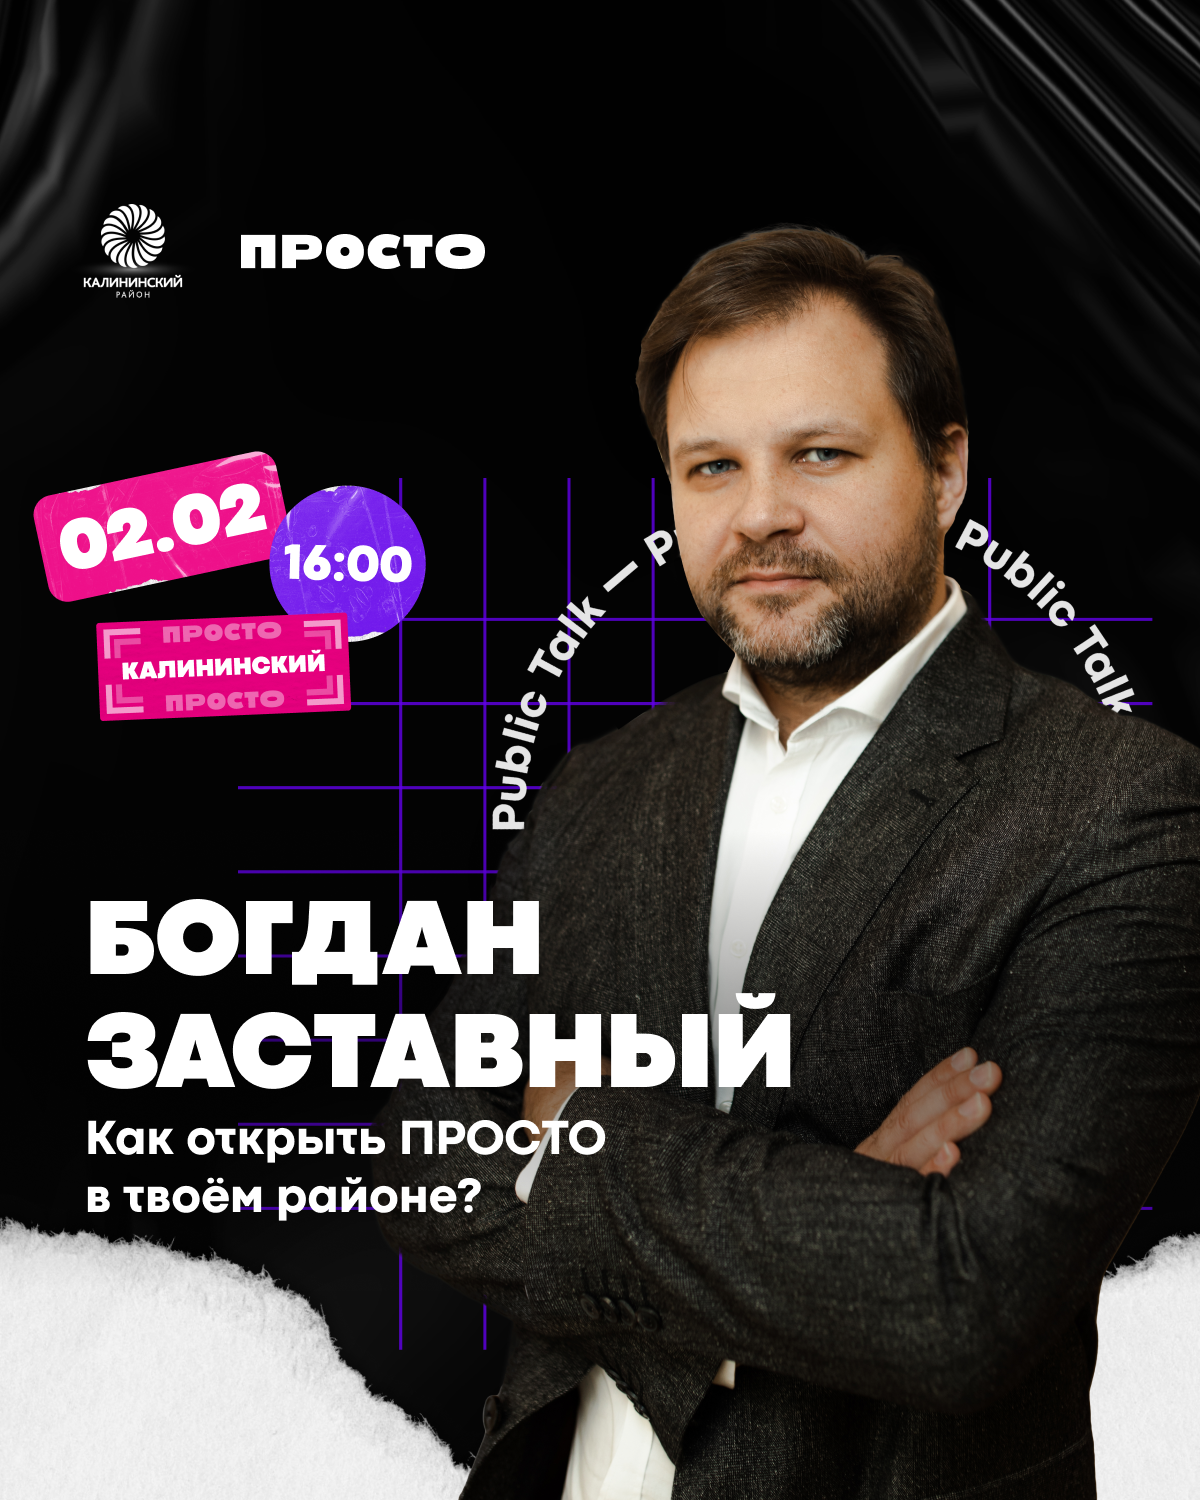 Public Talk о молодёжной политике с Богданом Заставным